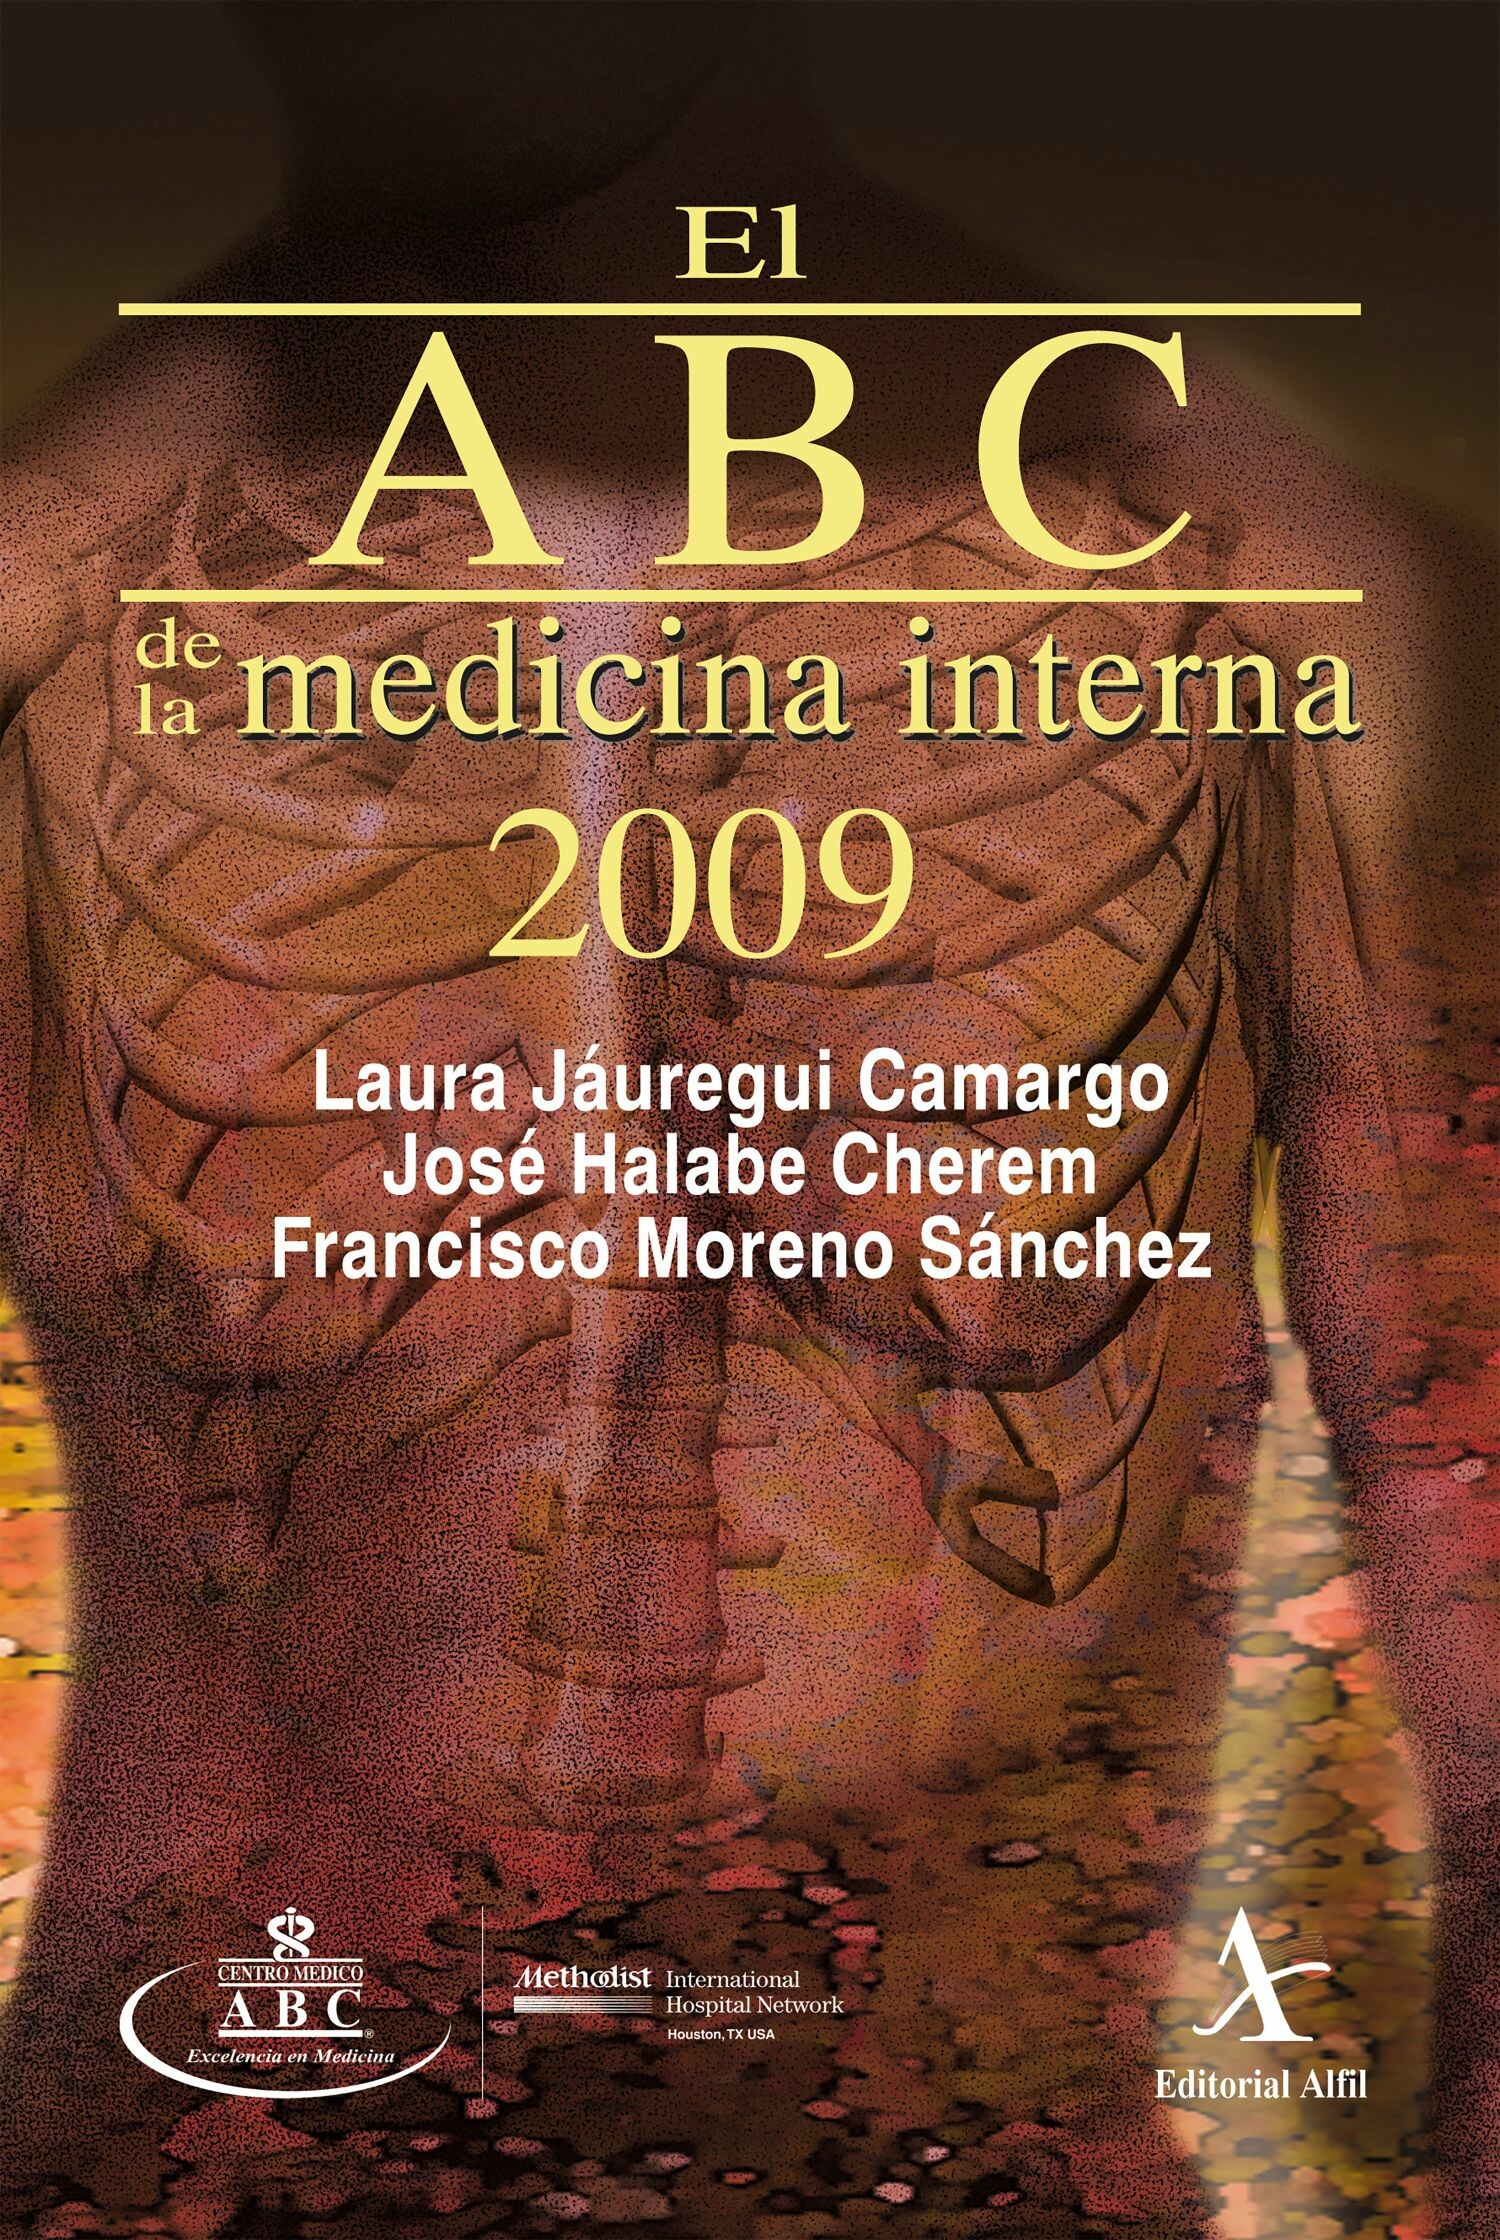 El ABC de la medicina interna 2009